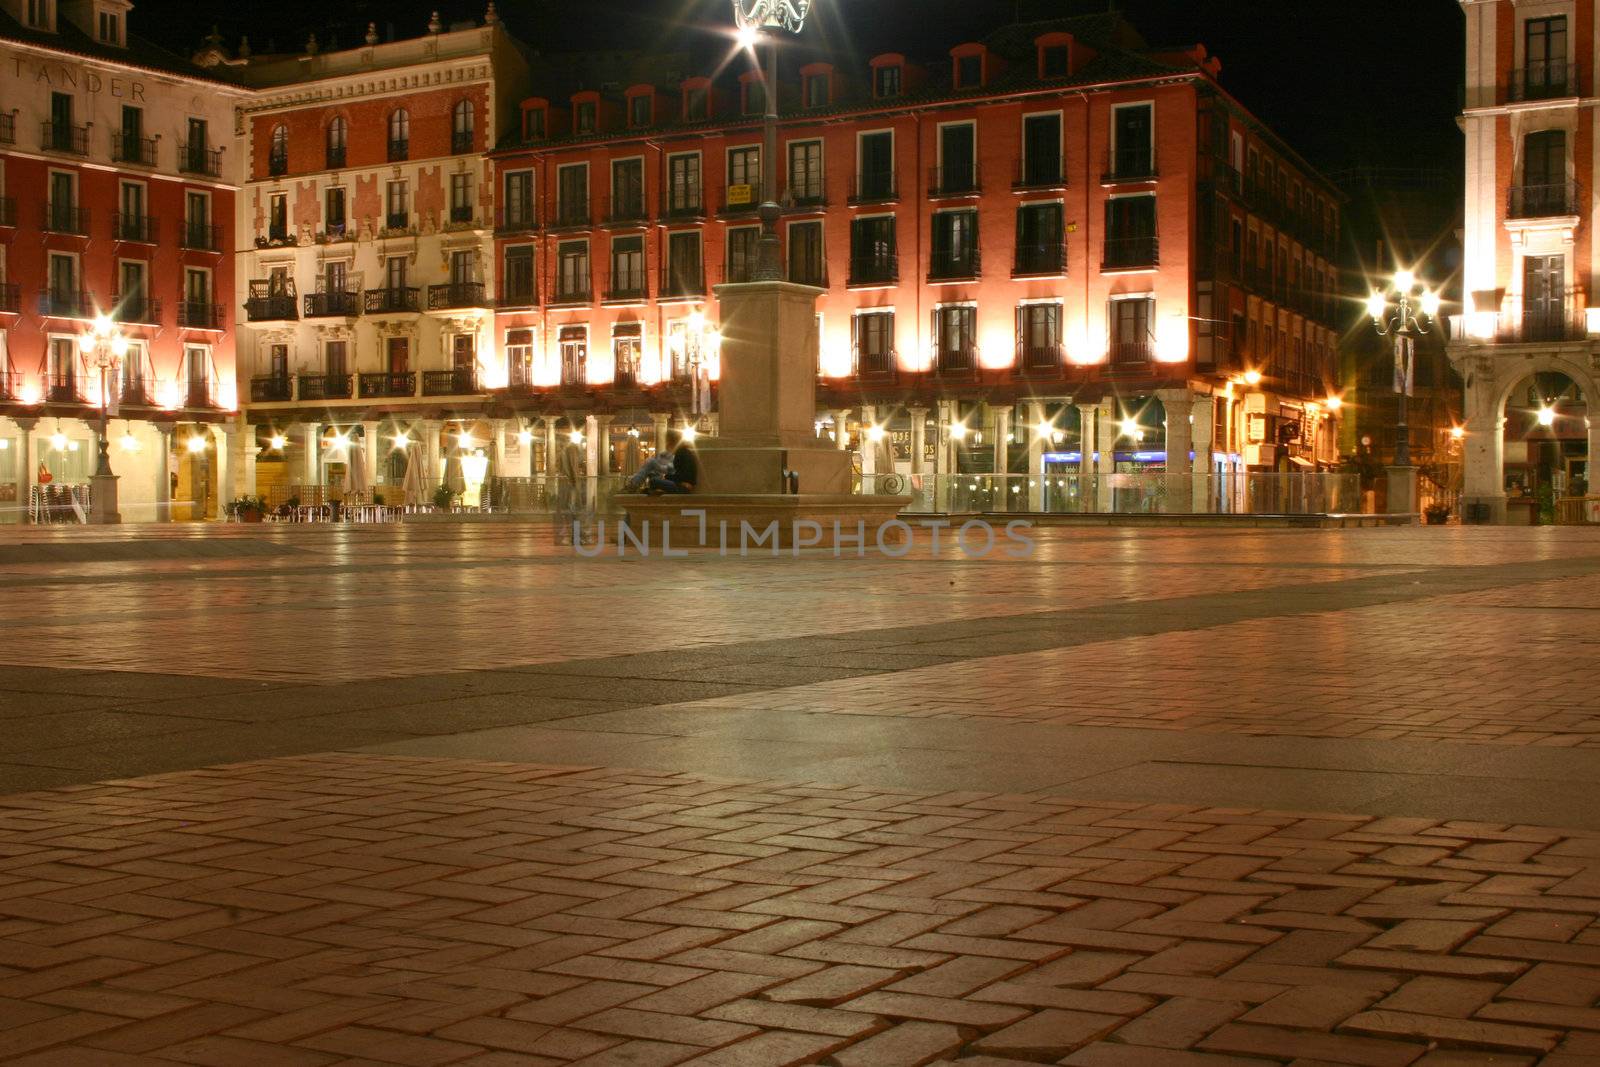 Valladolid at night by hospitalera